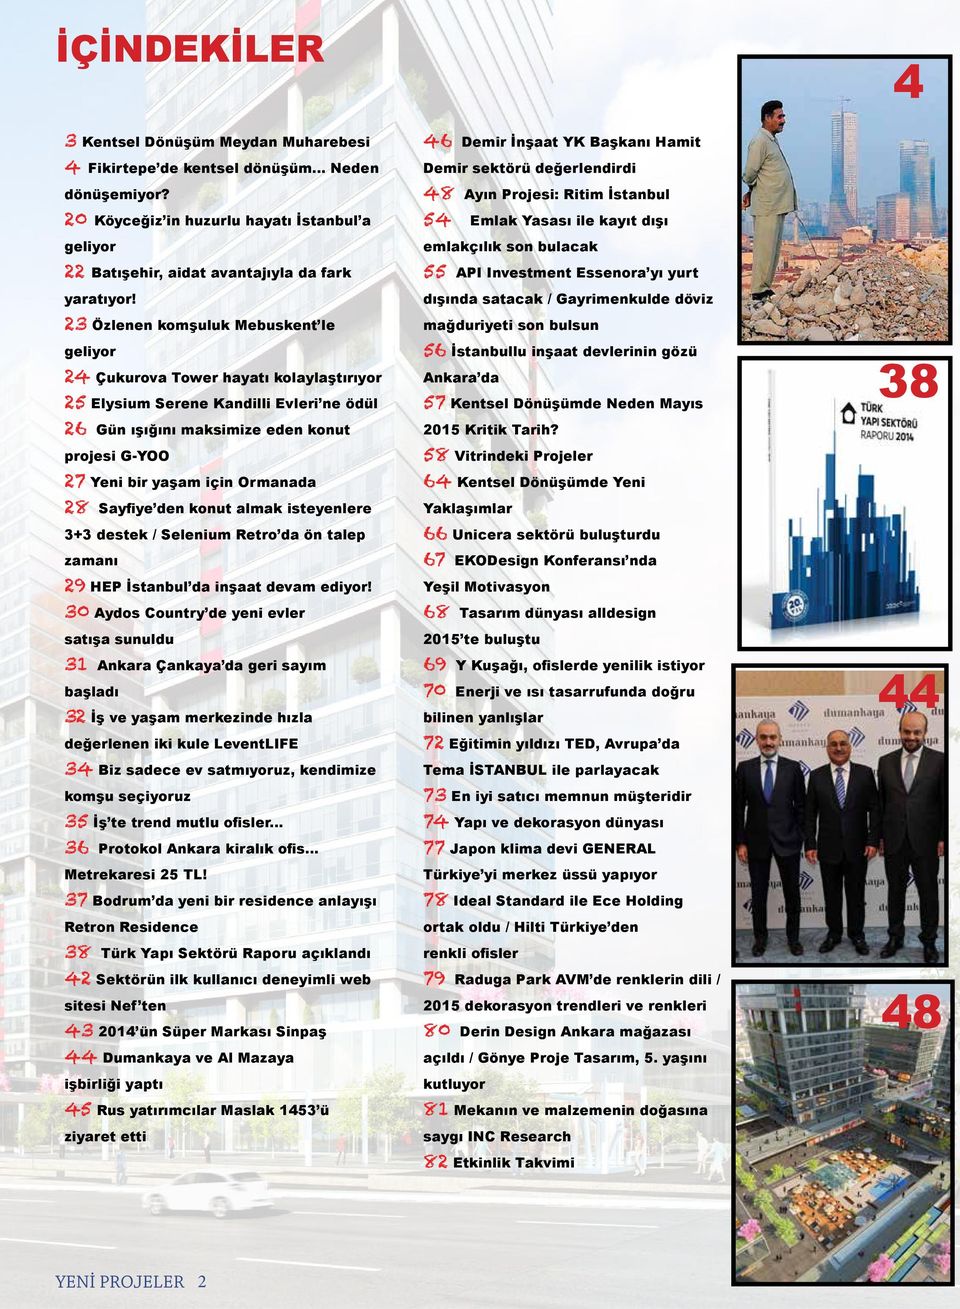 23 Özlenen komşuluk Mebuskent le geliyor 24 Çukurova Tower hayatı kolaylaştırıyor 25 Elysium Serene Kandilli Evleri ne ödül 26 Gün ışığını maksimize eden konut projesi G-YOO 27 Yeni bir yaşam için